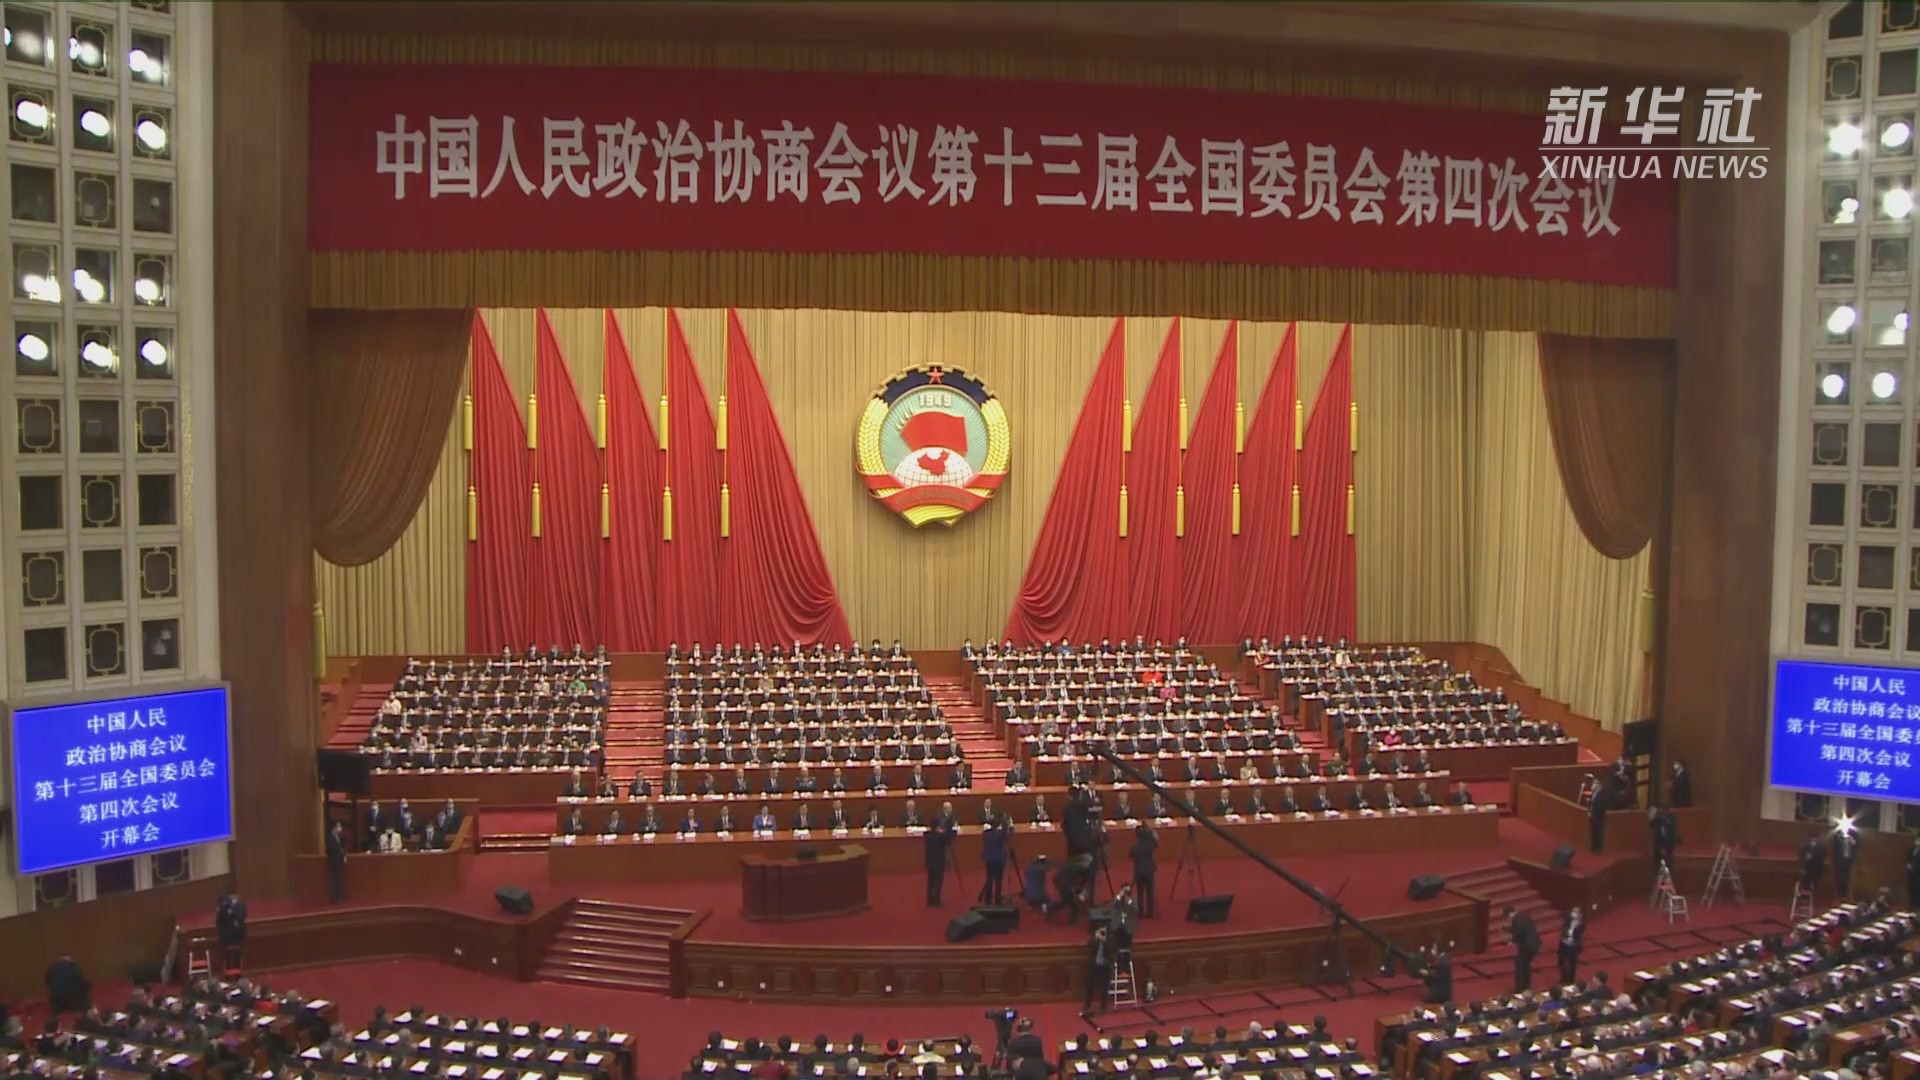 习近平出席中央政协工作会议暨庆祝中国人民政治协商会议成立70周年大会并发表重要讲话